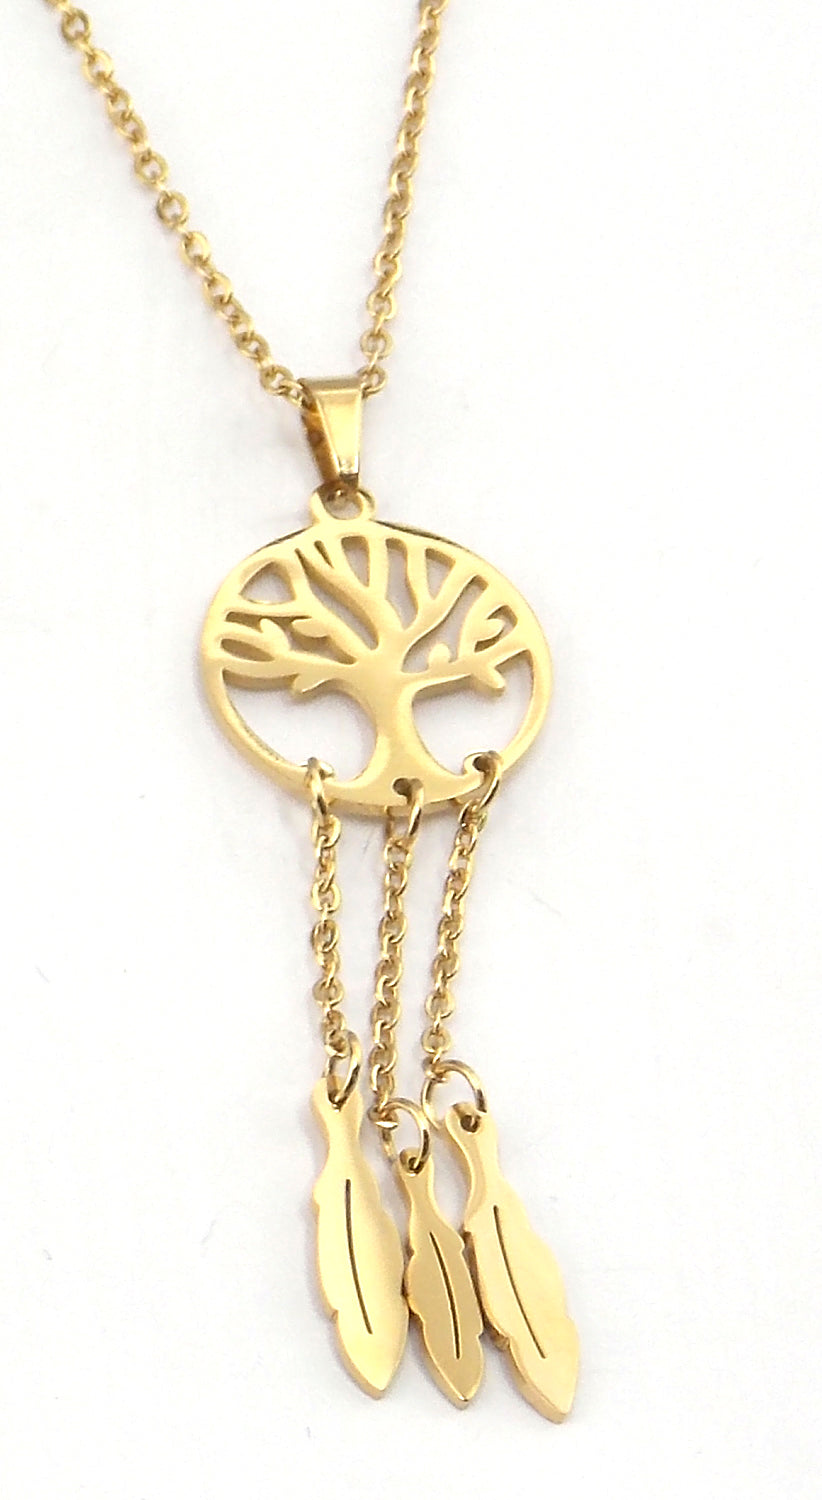 Colgante de acero en forma de árbol de la vida (atrapasueños) (dorado)